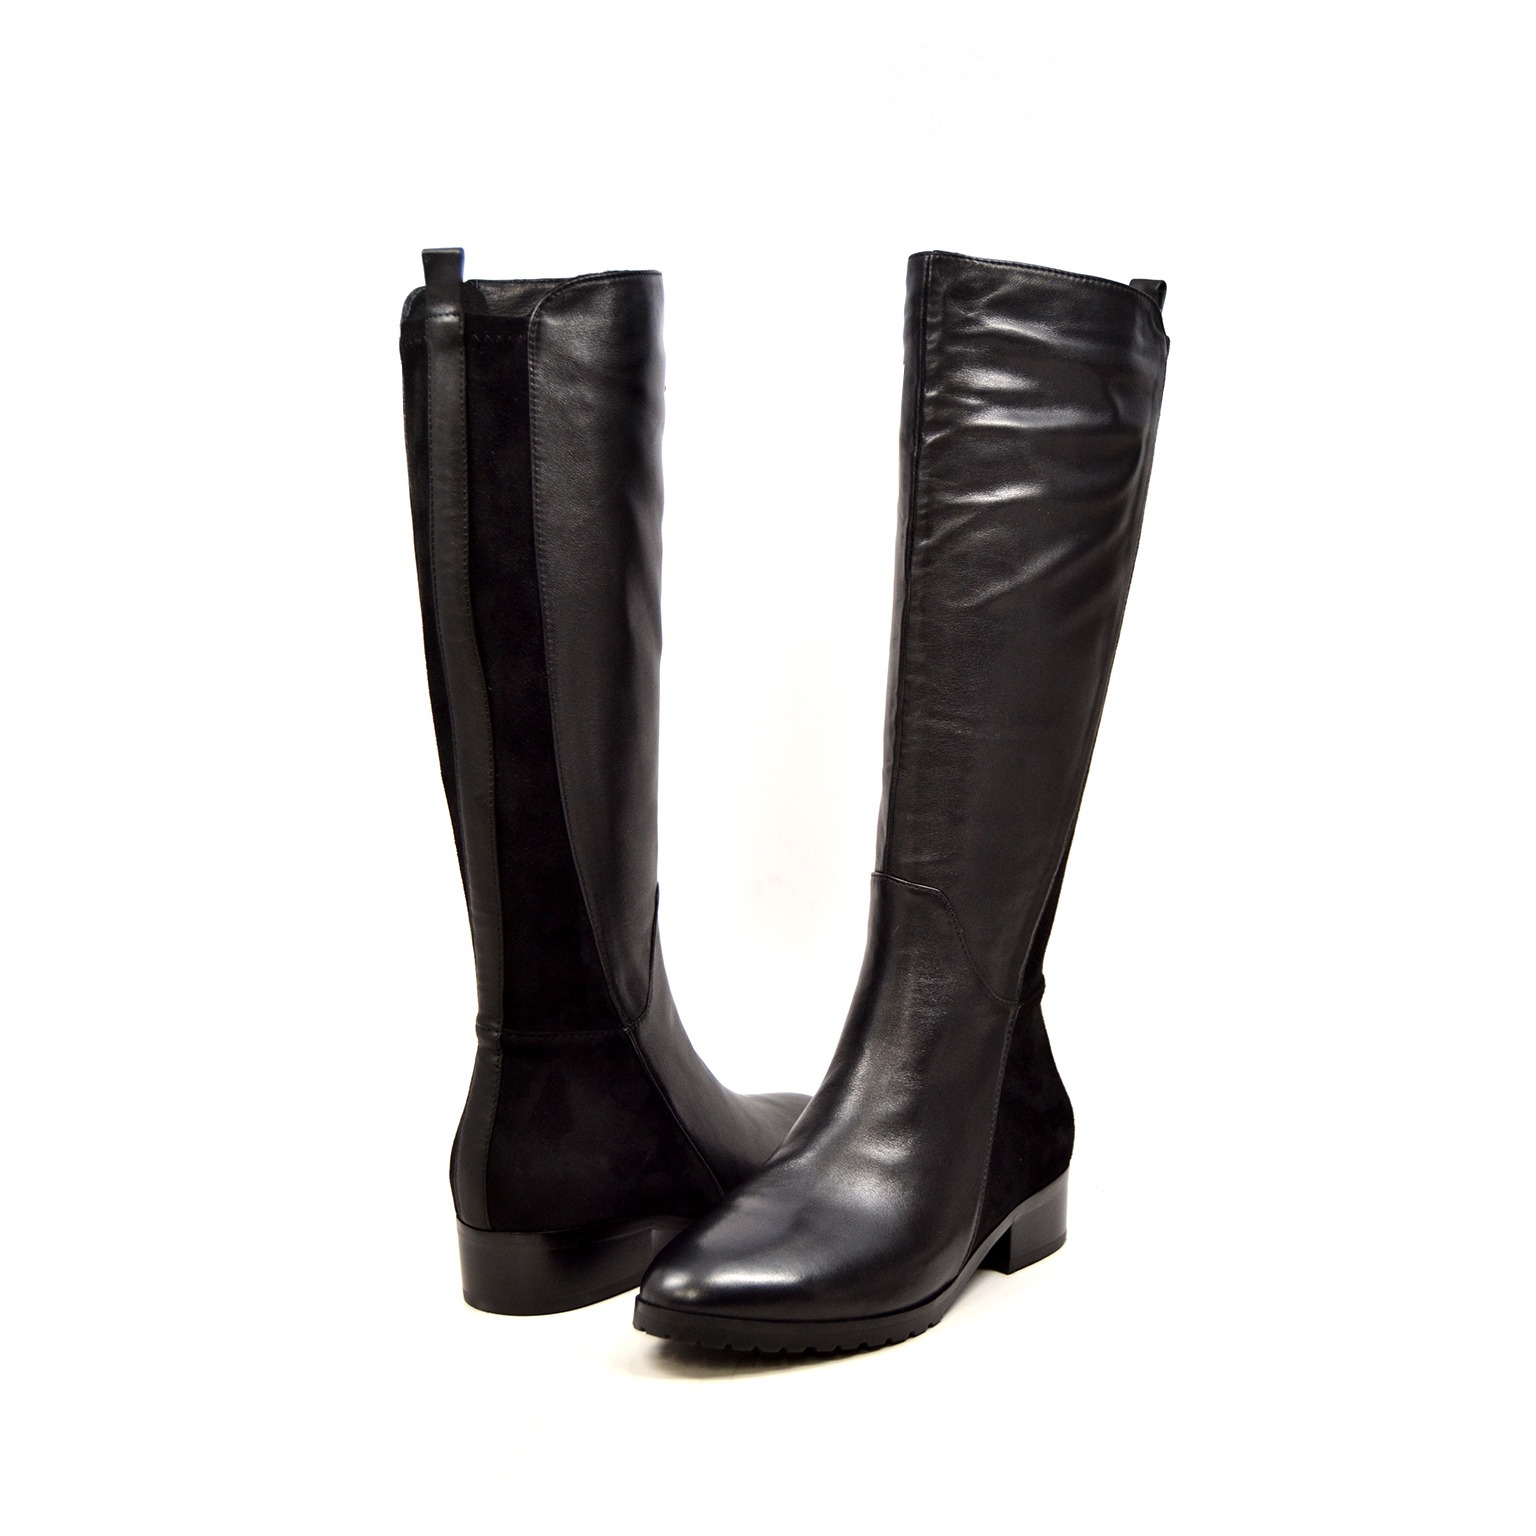 narrow calf black boots